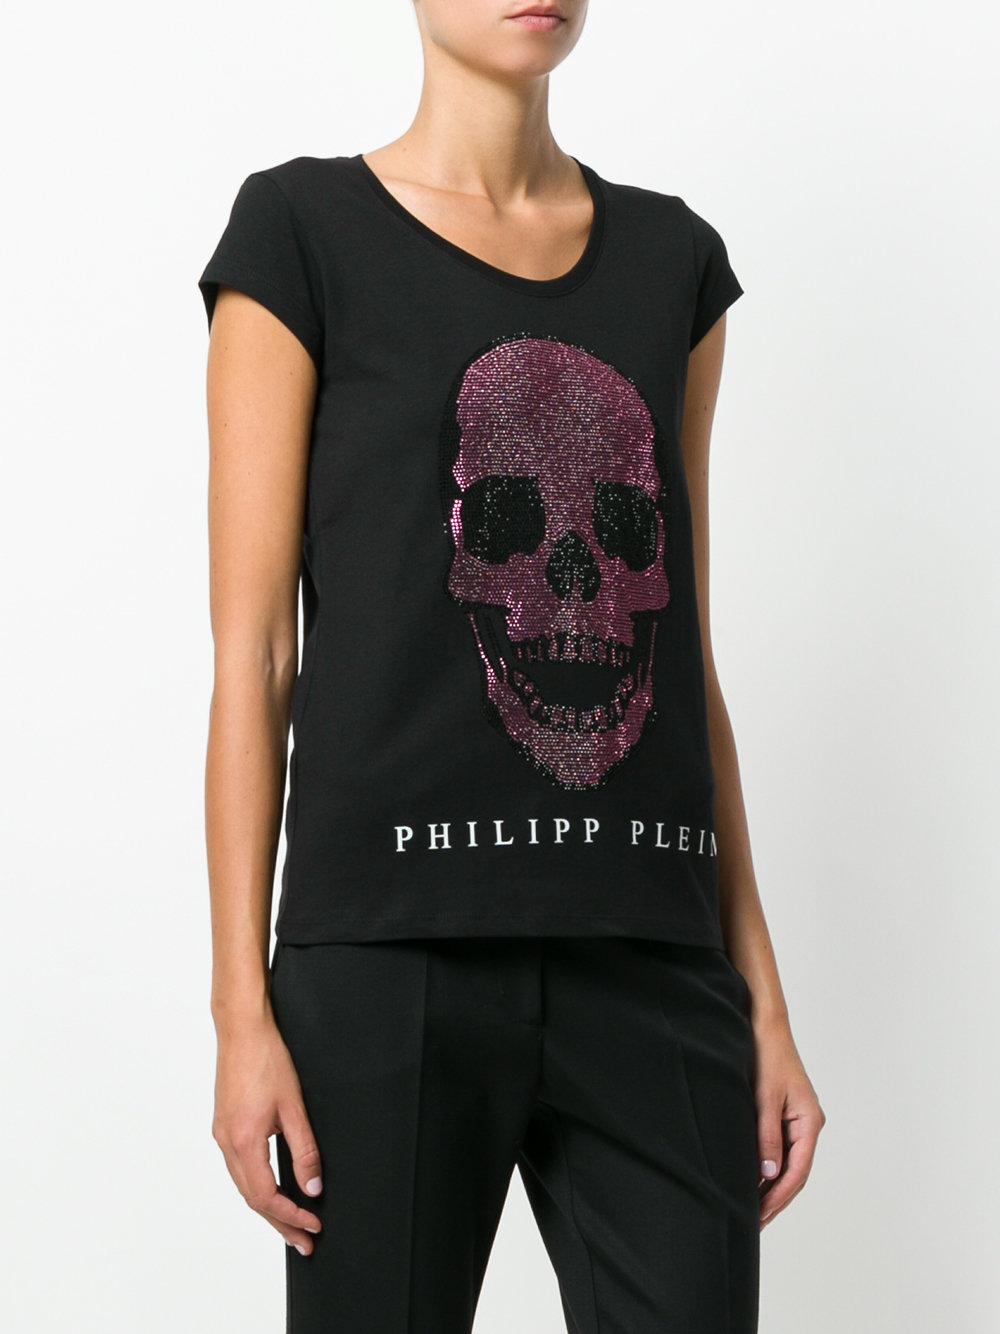 Aankoop >philipp plein swarovski t shirt Grote uitverkoop - OFF 75%